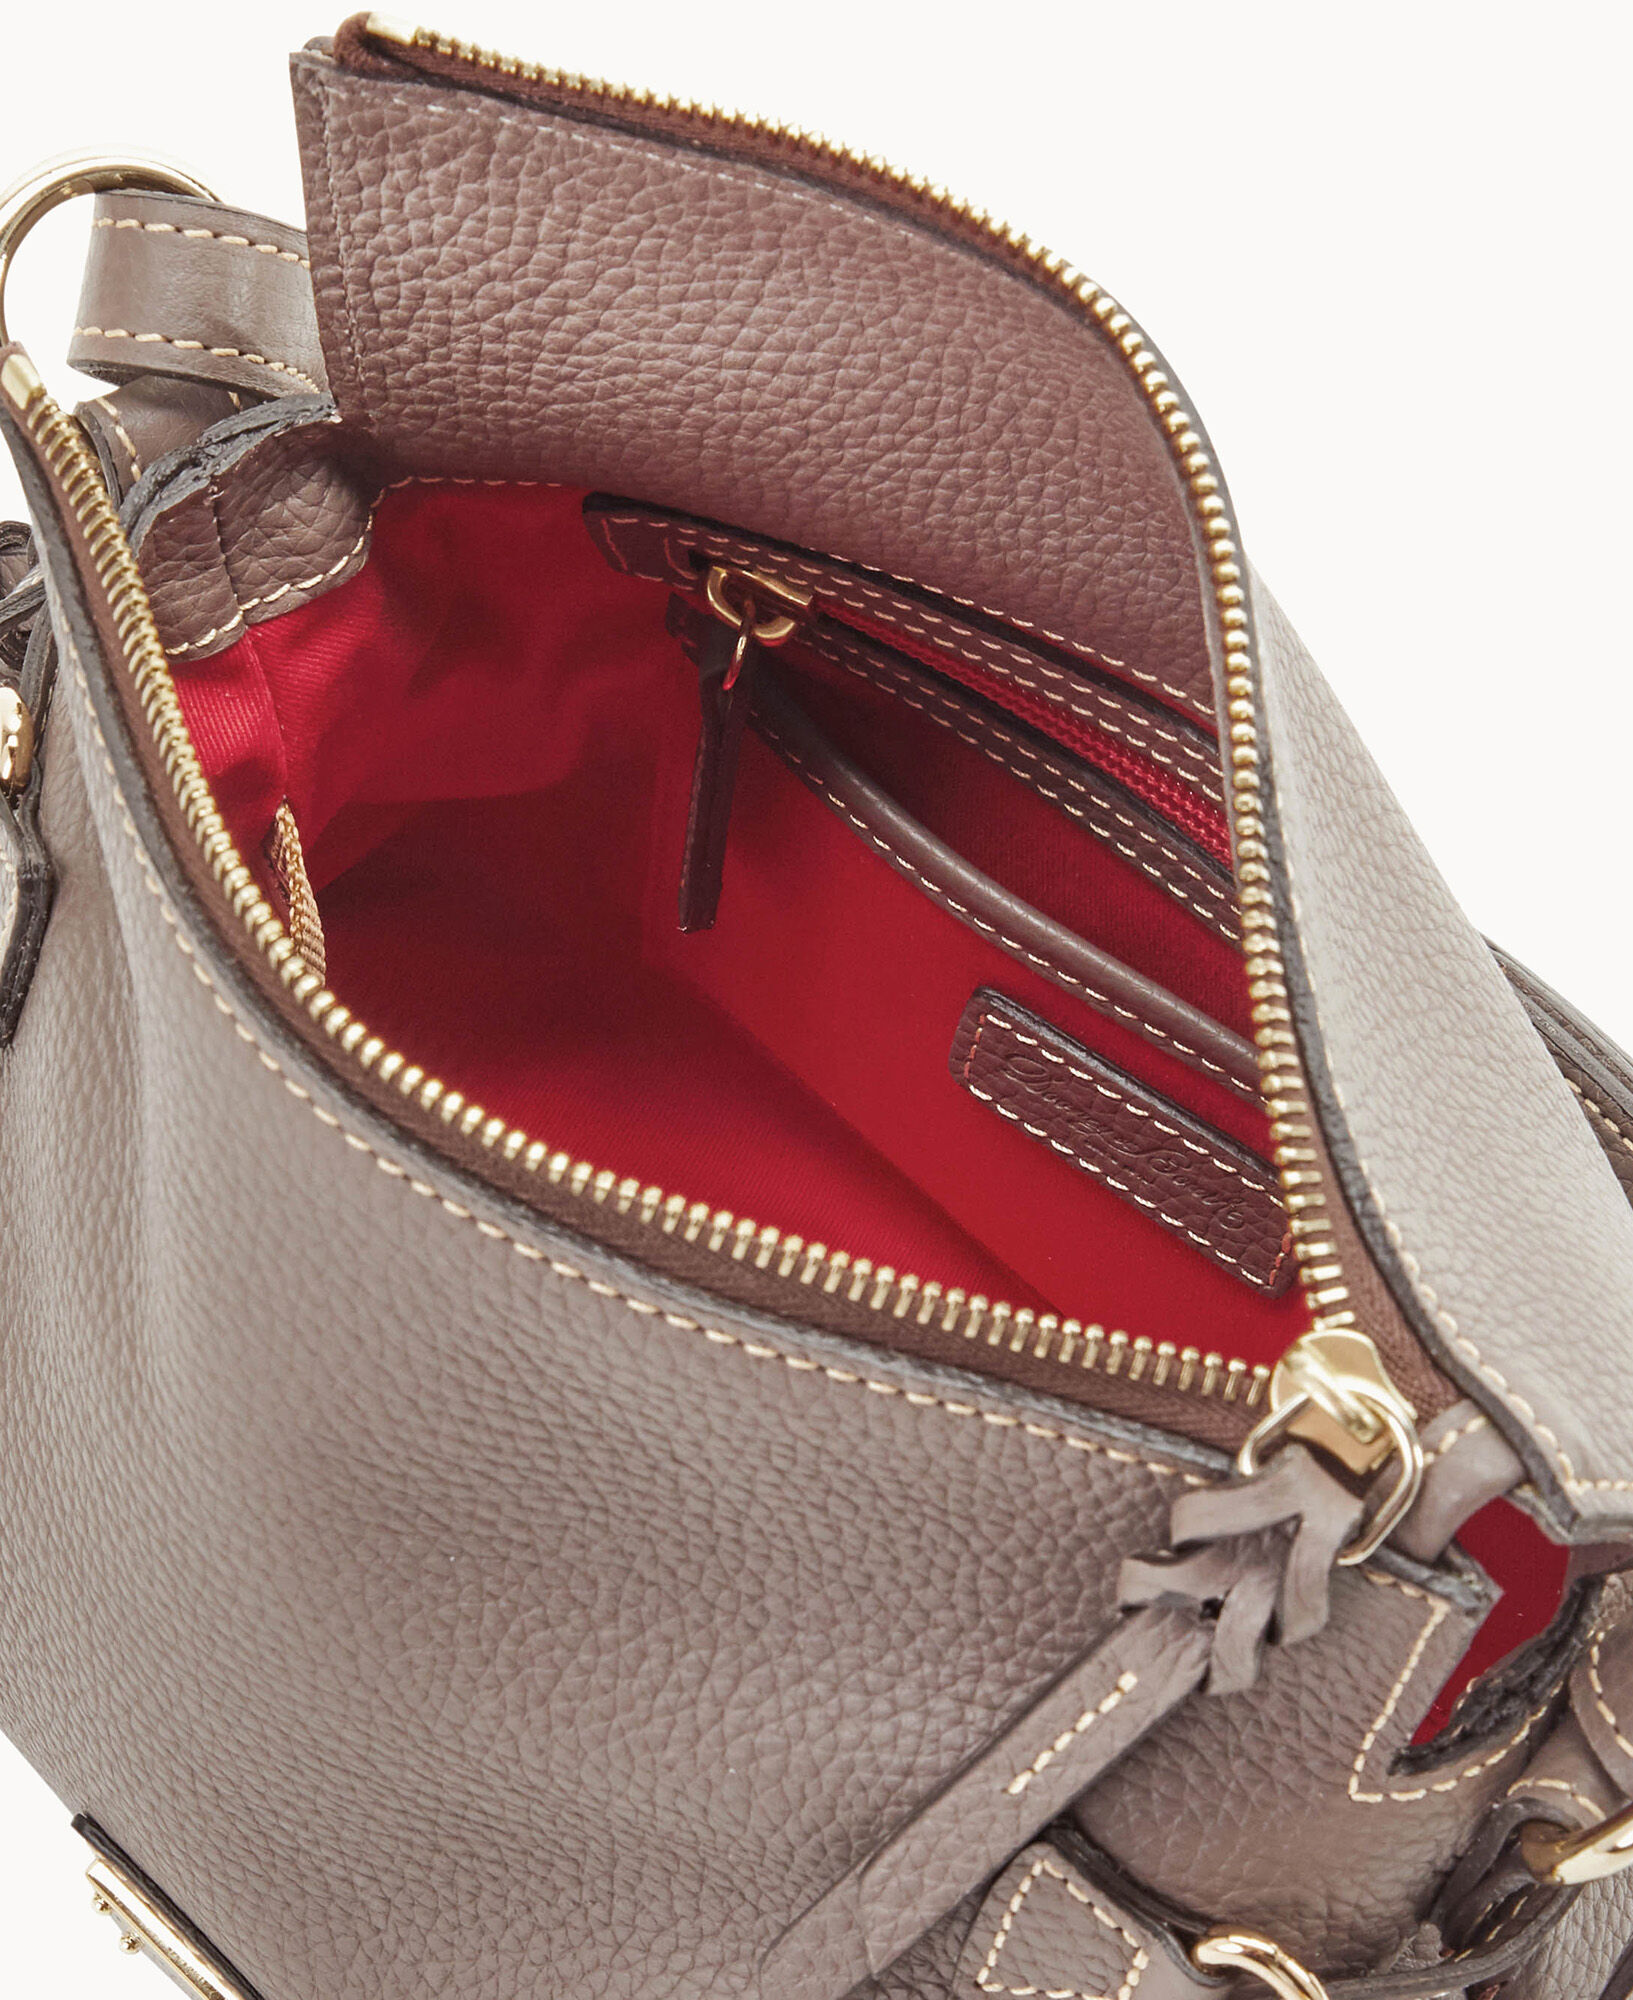 Leather Zipper Pull / Mini Tassel Accessory / Handbag Tassel Charm